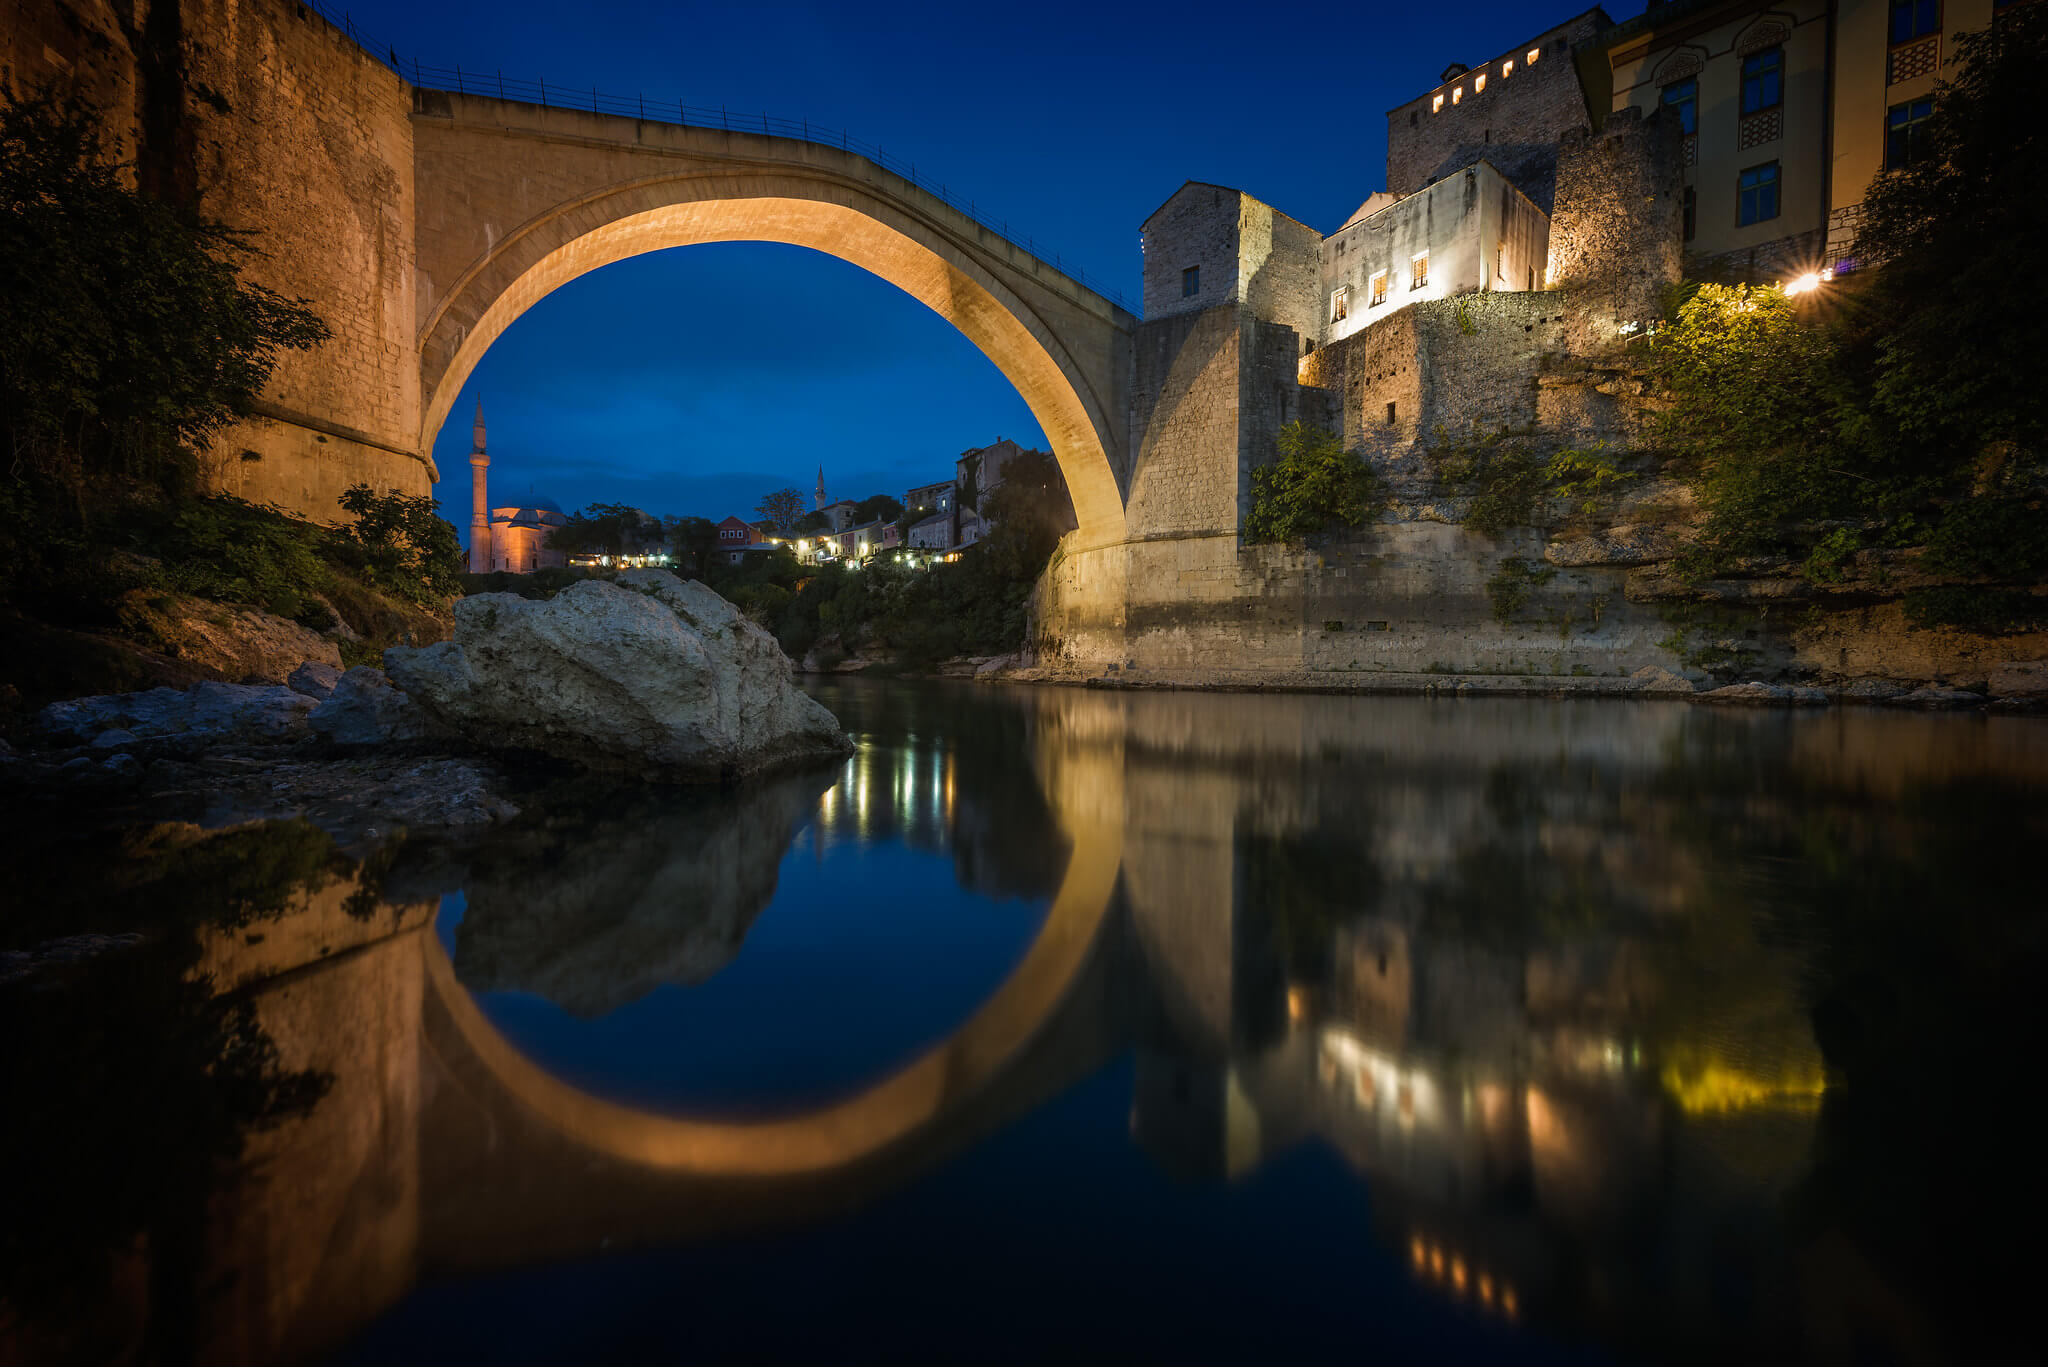 ZweersVanLoon-Bridge in Bosnia, 19sept2015-Grzegorz Smieciuszewski-Flickr